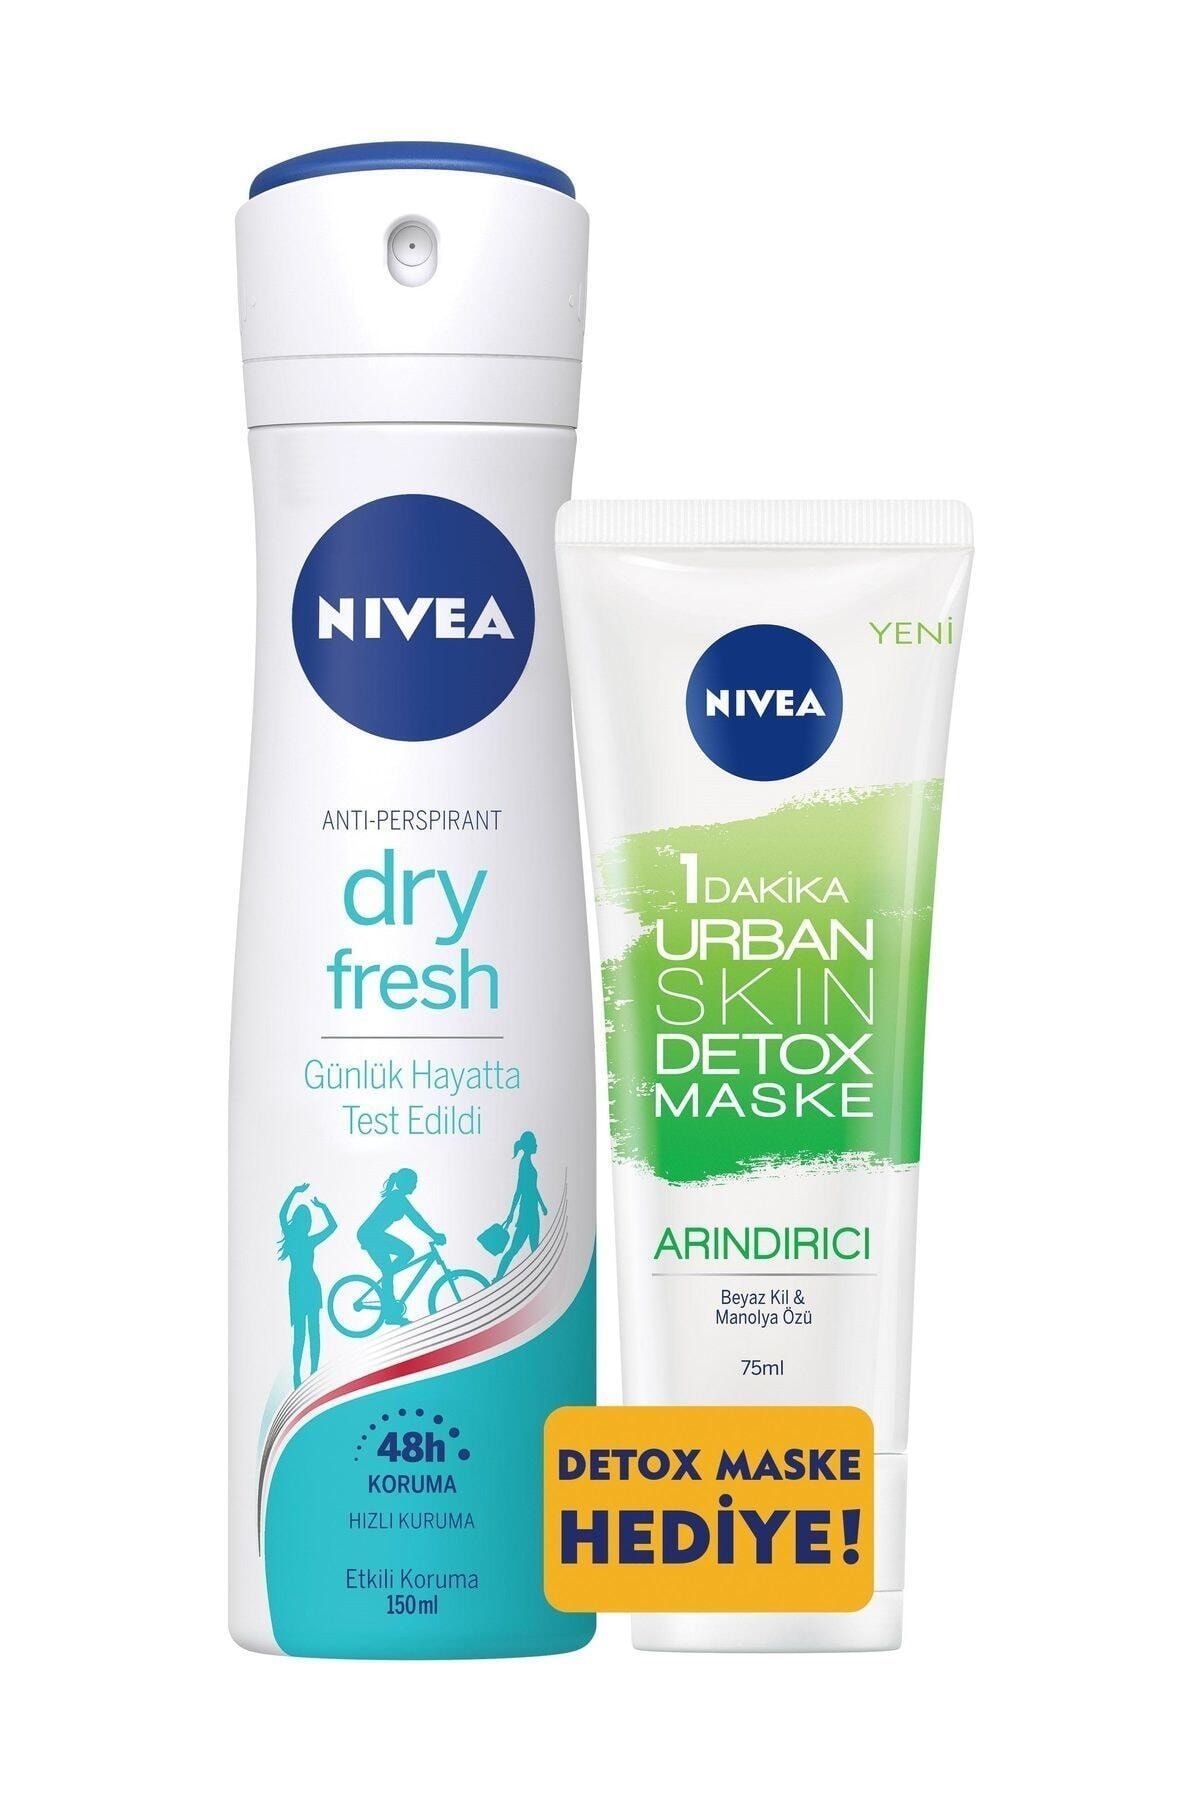 NIVEA Dry Fresh Kadın Sprey + Urban Yeşil Maske